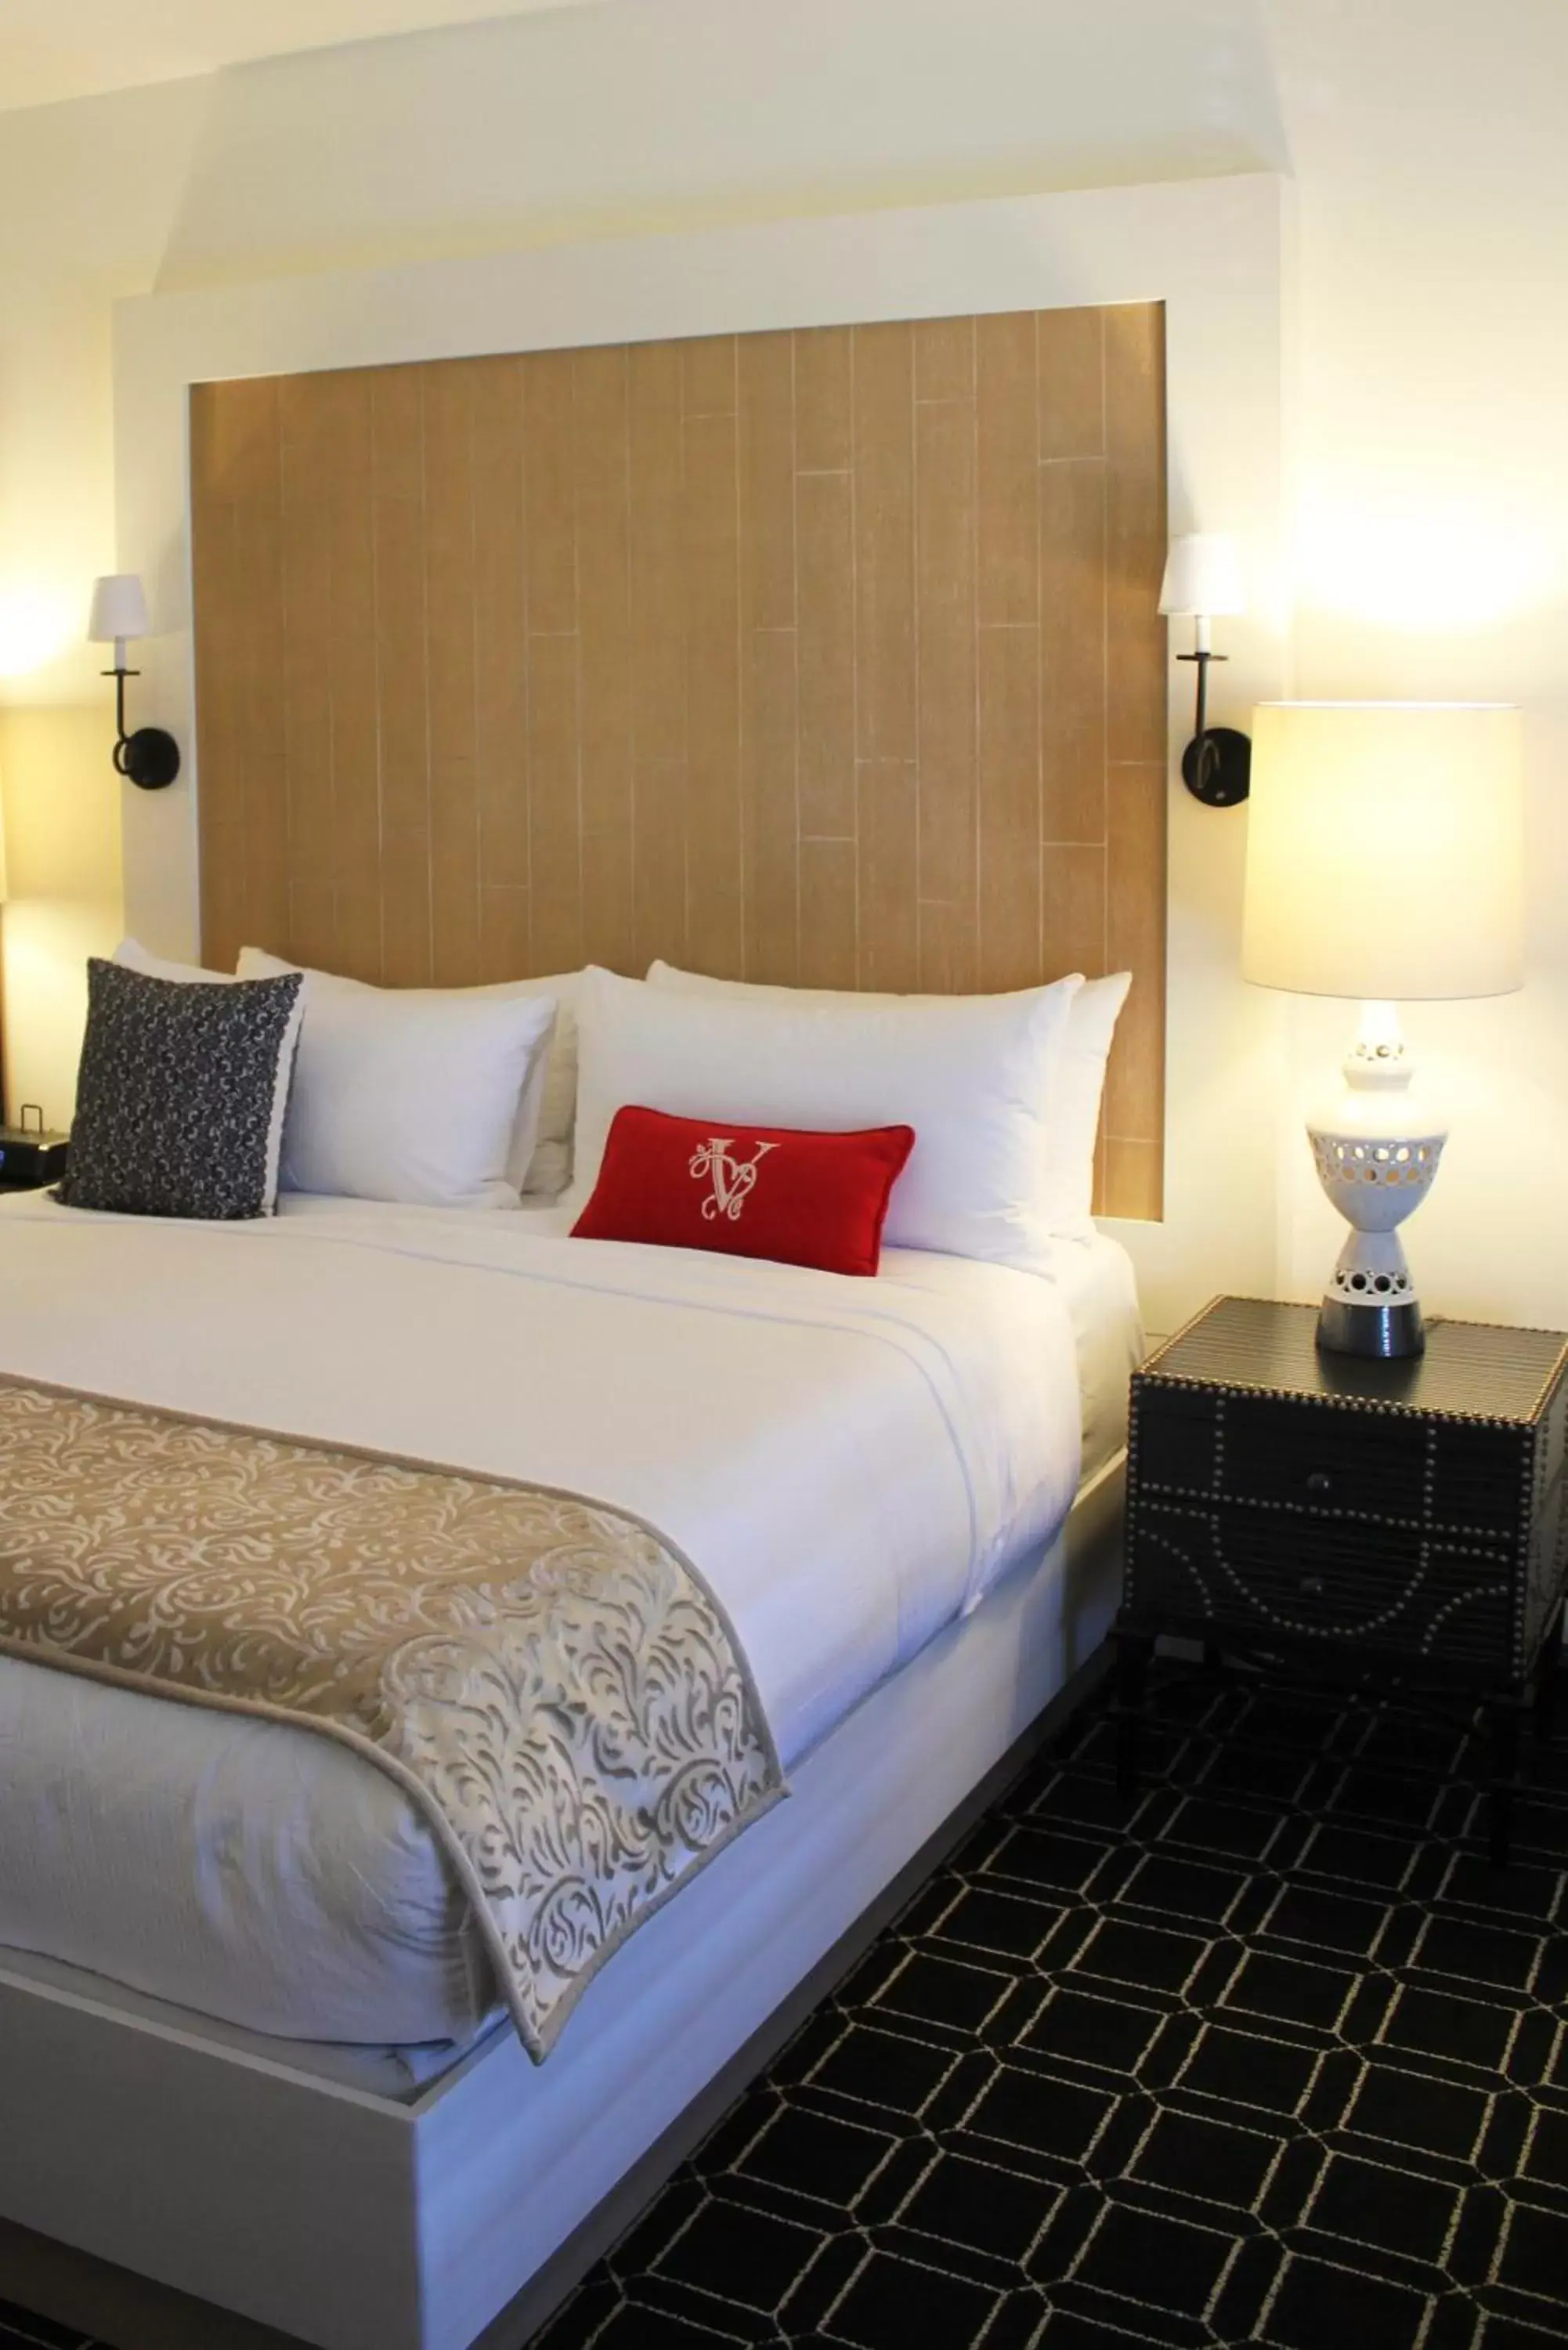 Bed, Room Photo in Hotel Valencia Santana Row